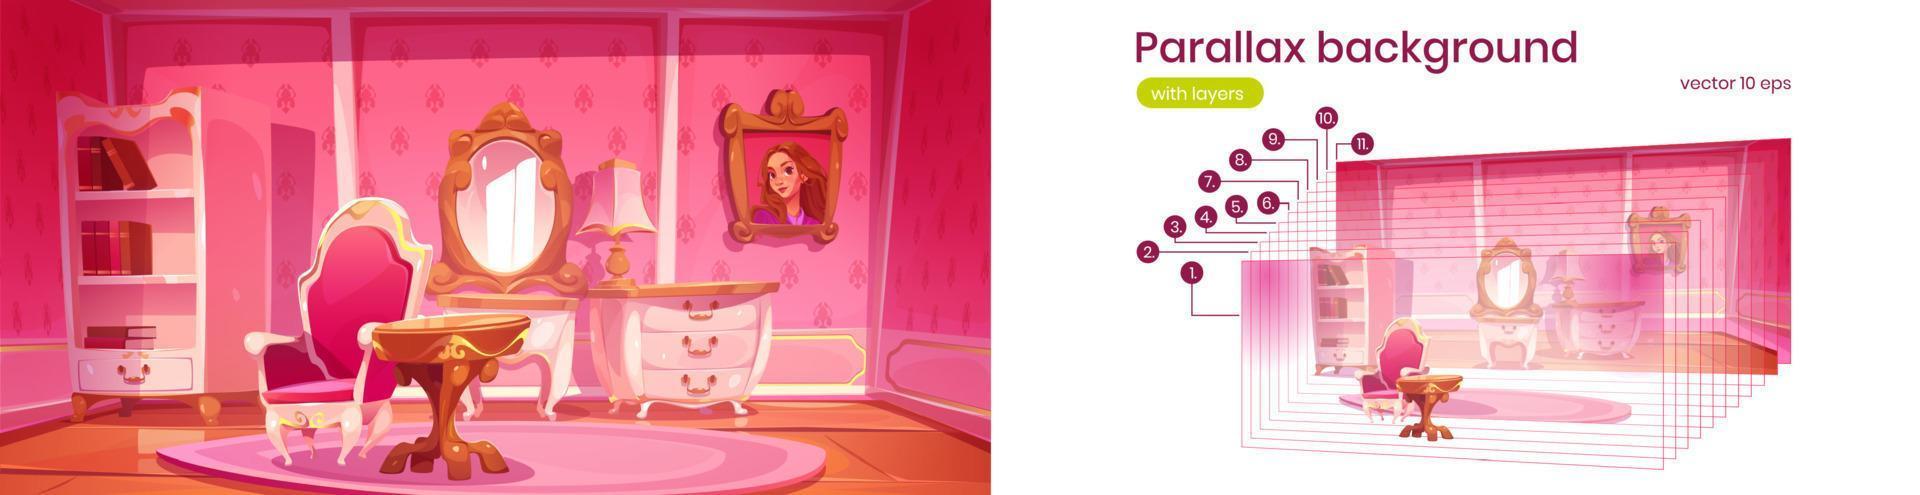 parallax hintergrund rosa prinzessin wohnzimmer vektor